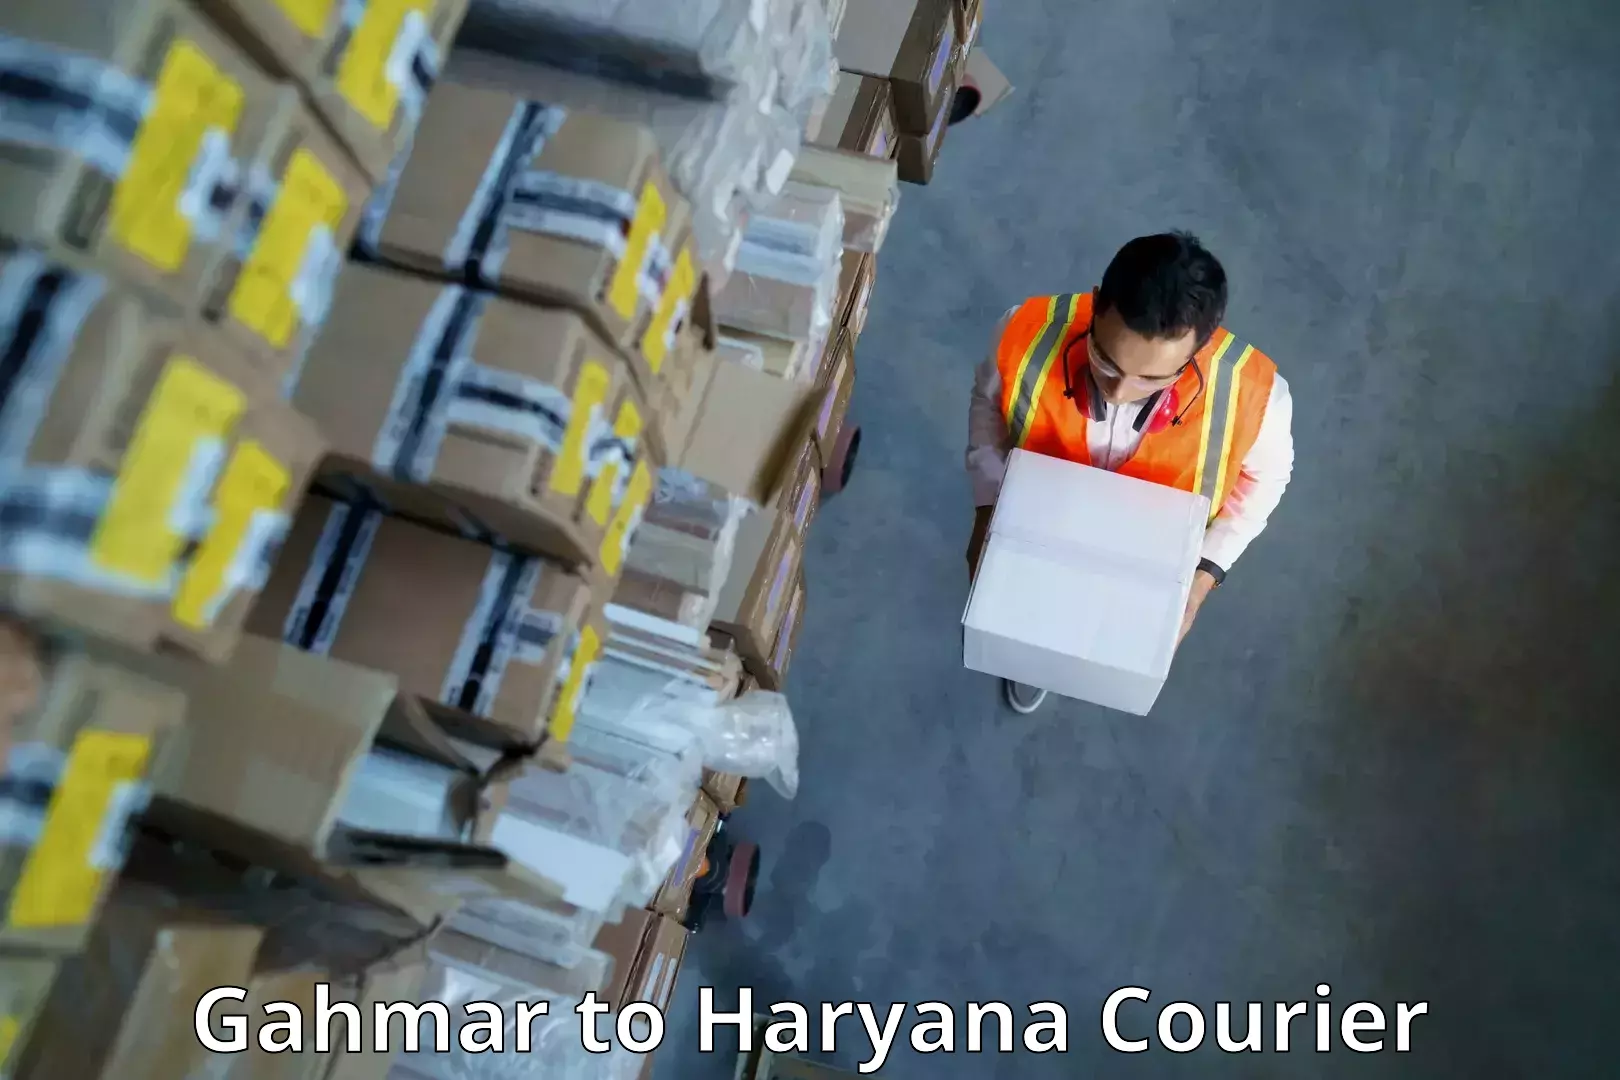 Discounted shipping Gahmar to Chaudhary Charan Singh Haryana Agricultural University Hisar